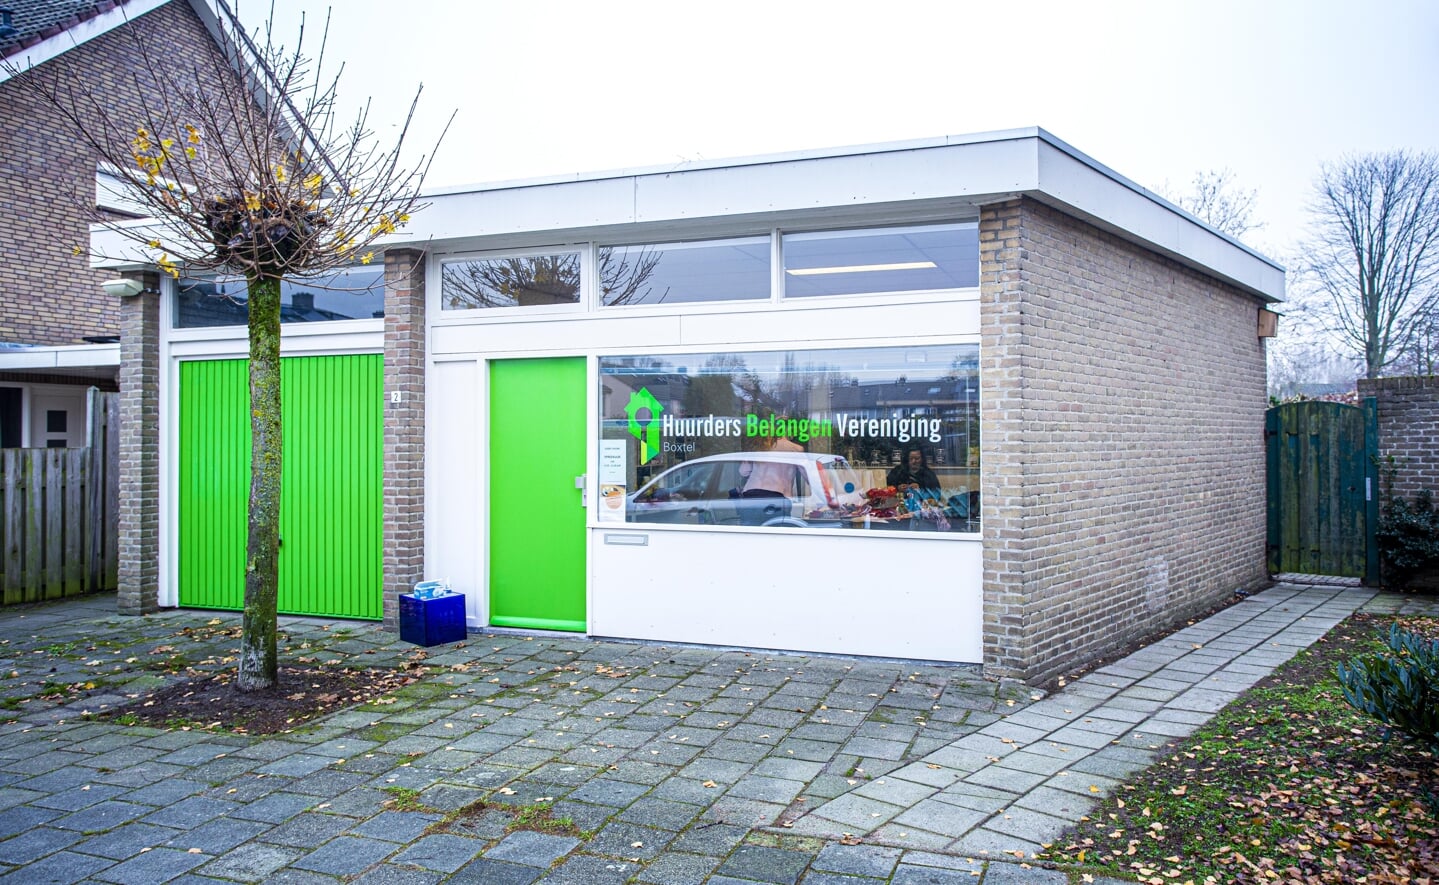 Kletspunt Selissenwal is op dinsdagmiddag en woensdagochtend geopend in het kantoor van de Huurders Belangen Vereniging aan de Van der Aastraat.